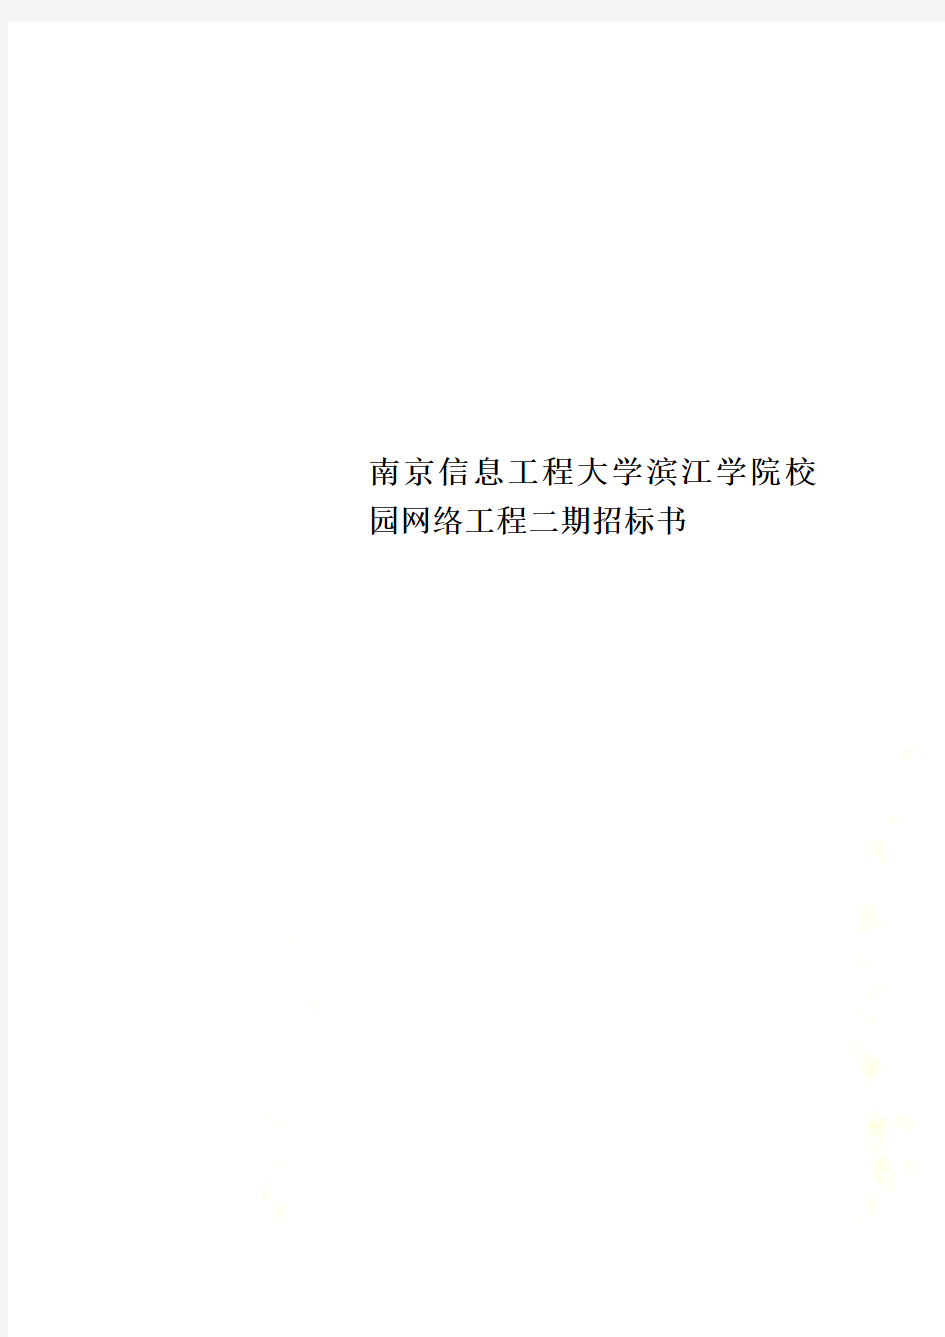 南京信息工程大学滨江学院校园网络工程二期招标书